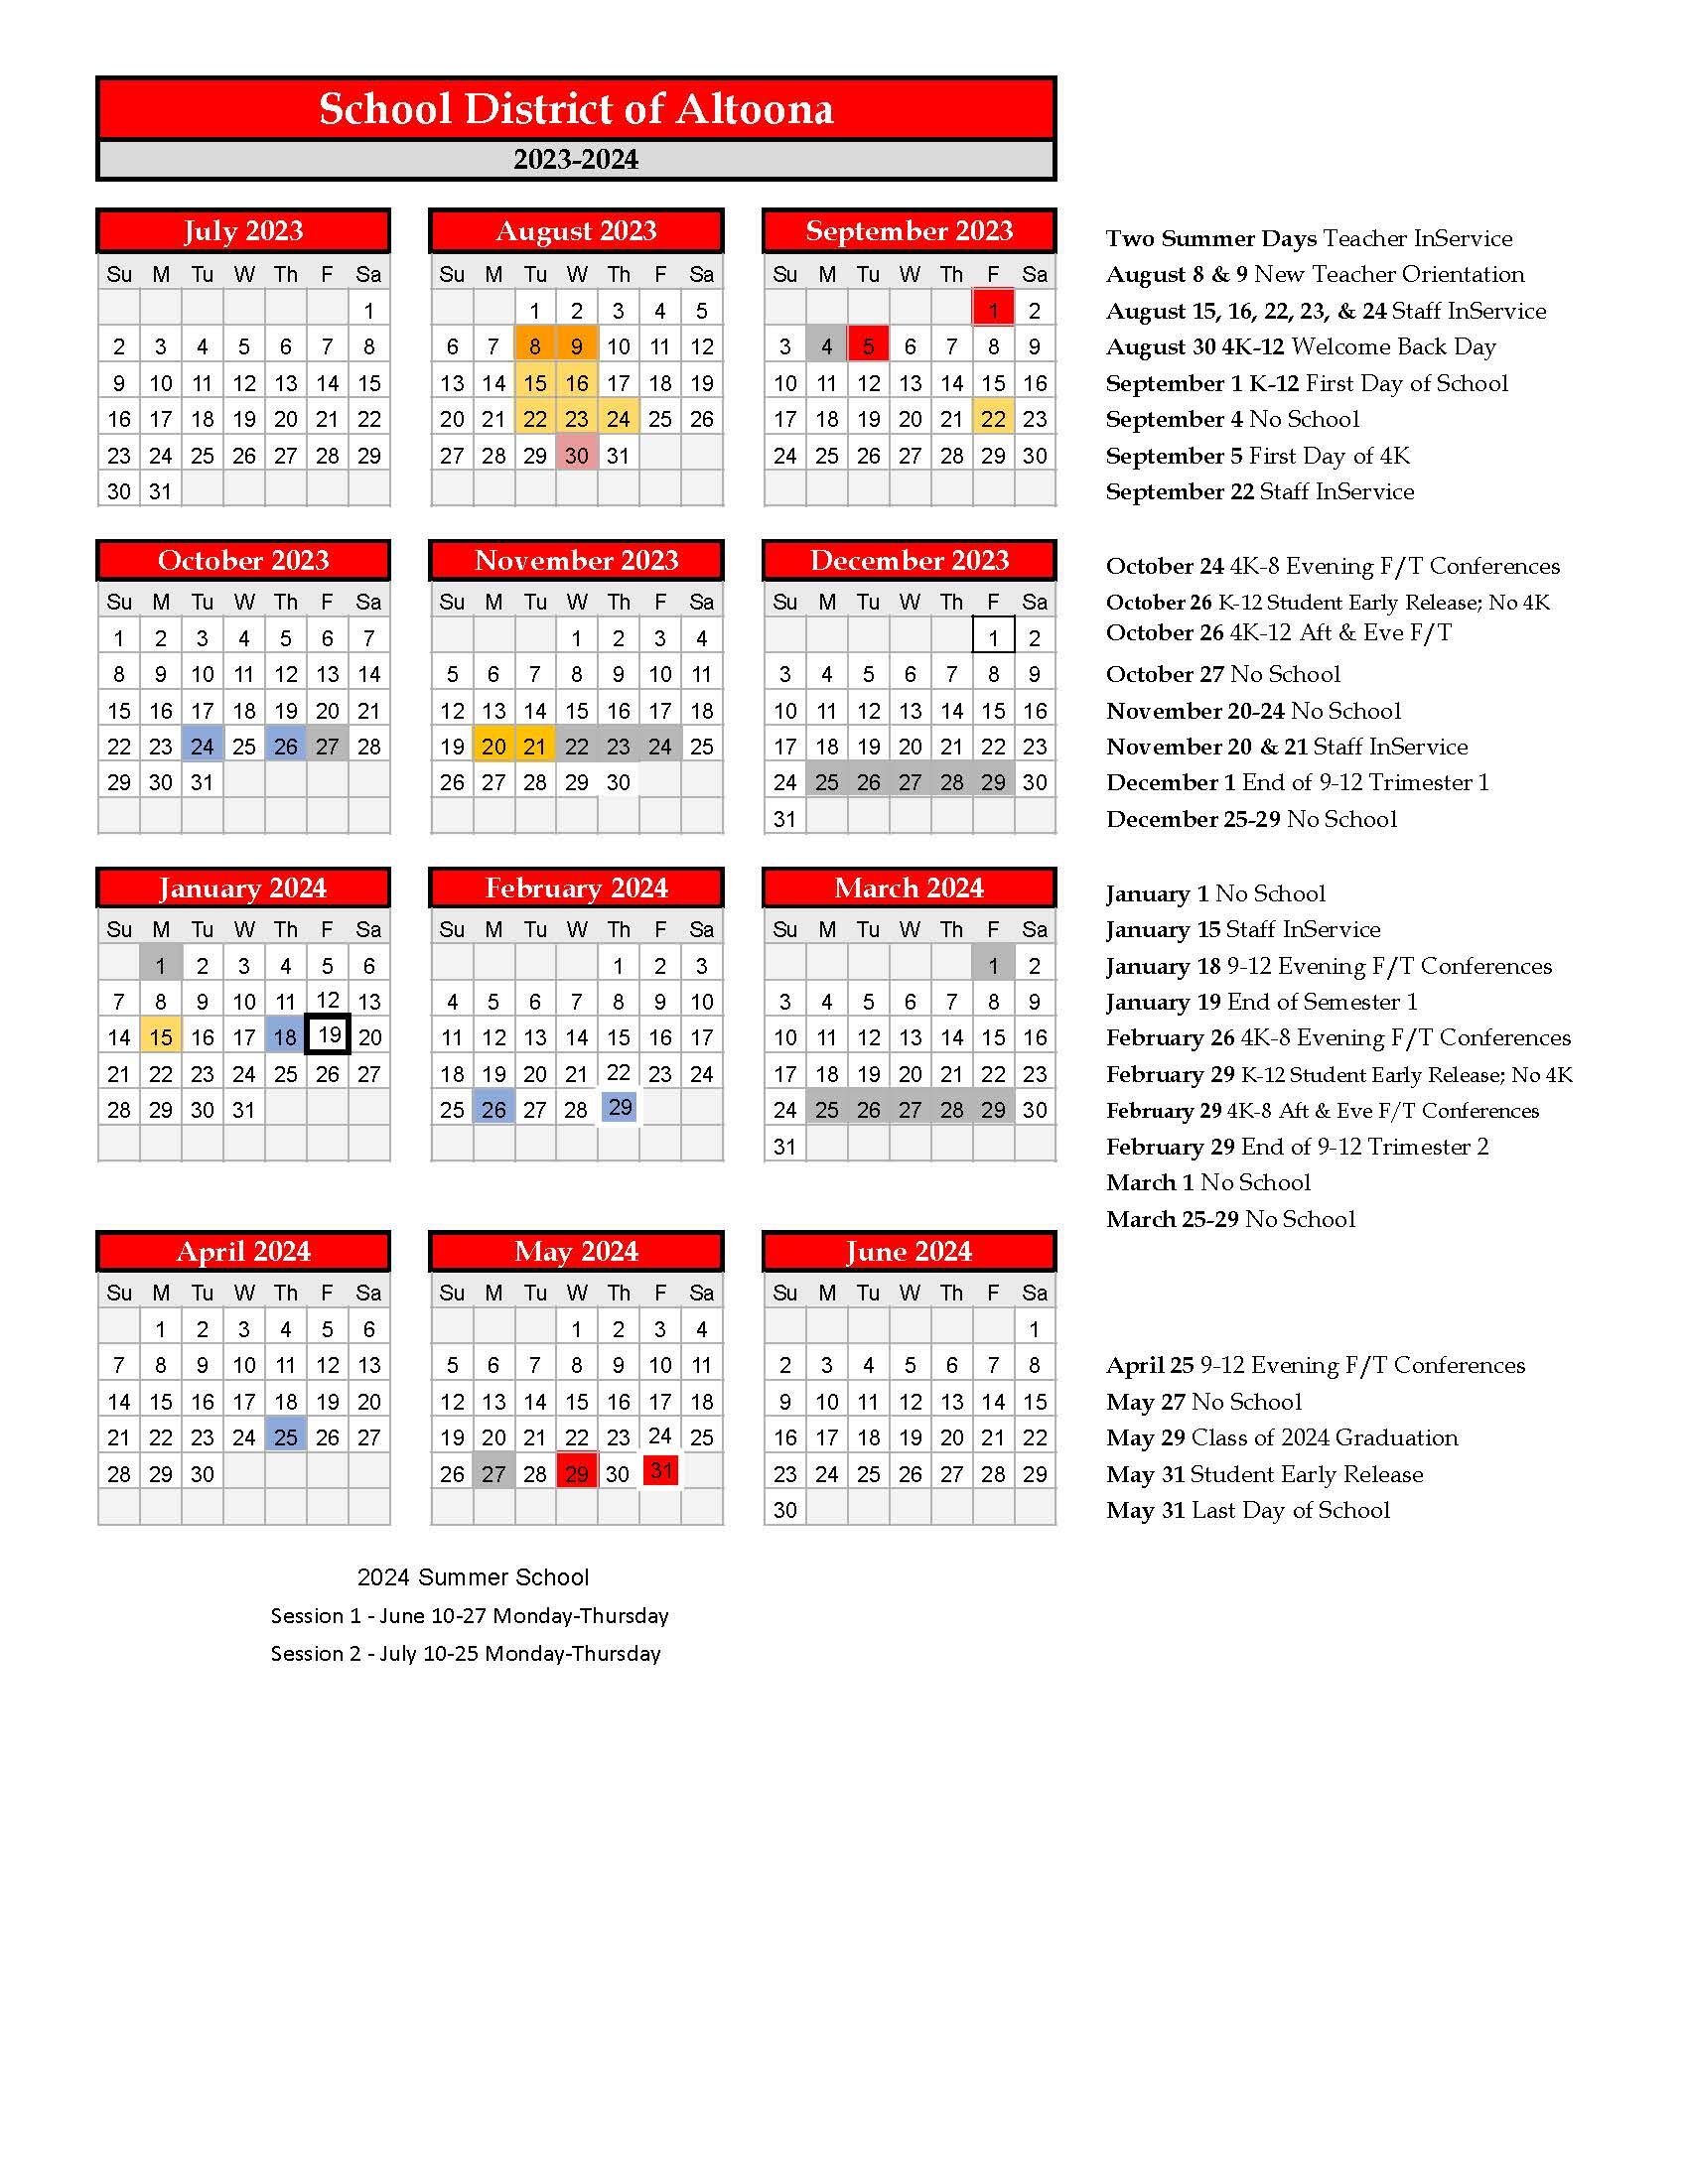 gwinnett-county-school-calendar-2024-2025-maiga-roxanna